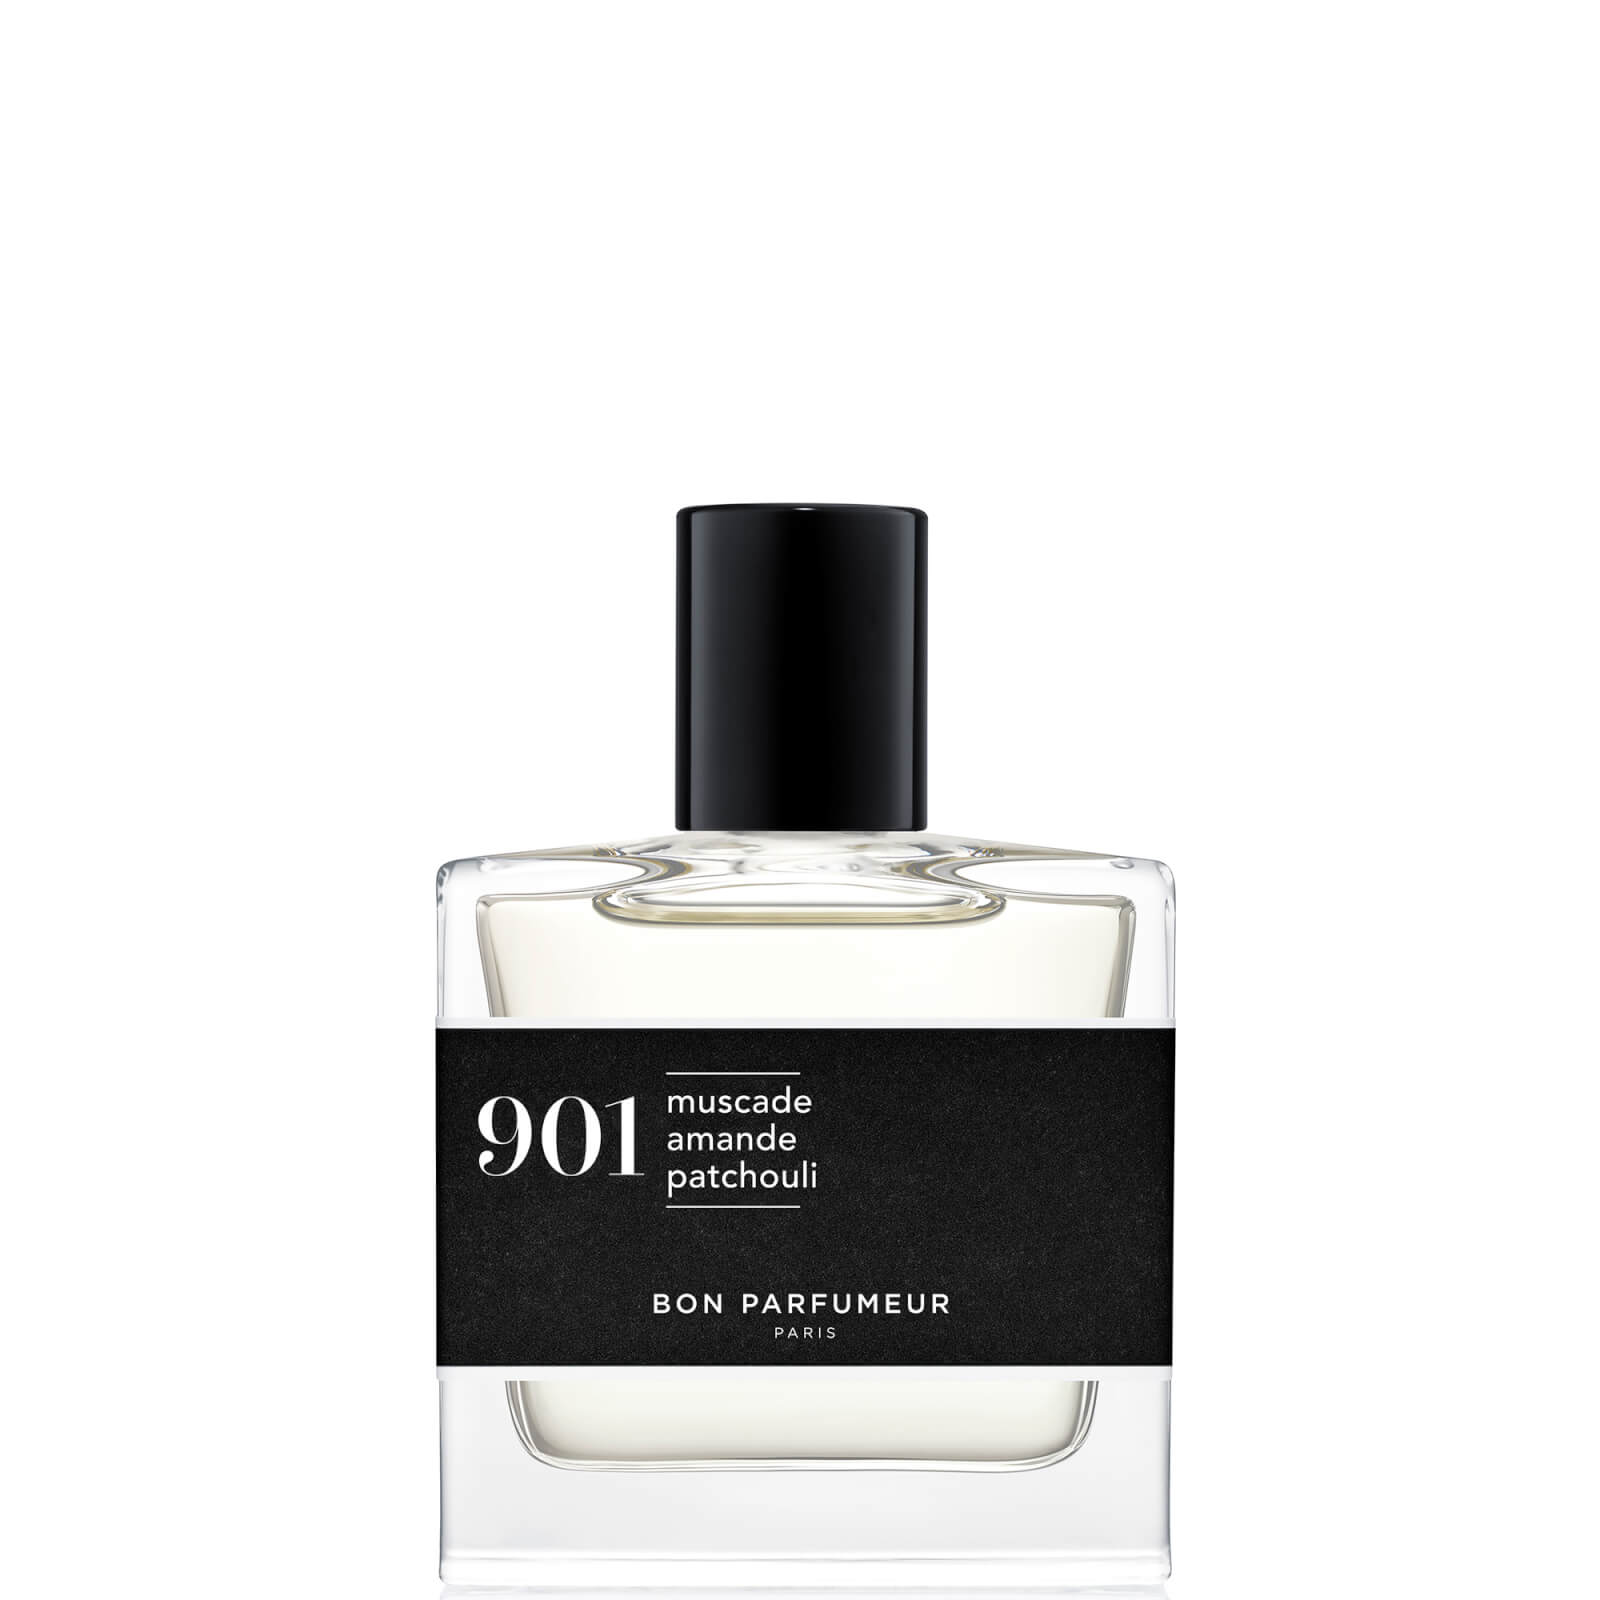 Image of Bon Parfumeur 901 Noce Moscata Mandorla Patchouli Eau de Parfum - 30ml